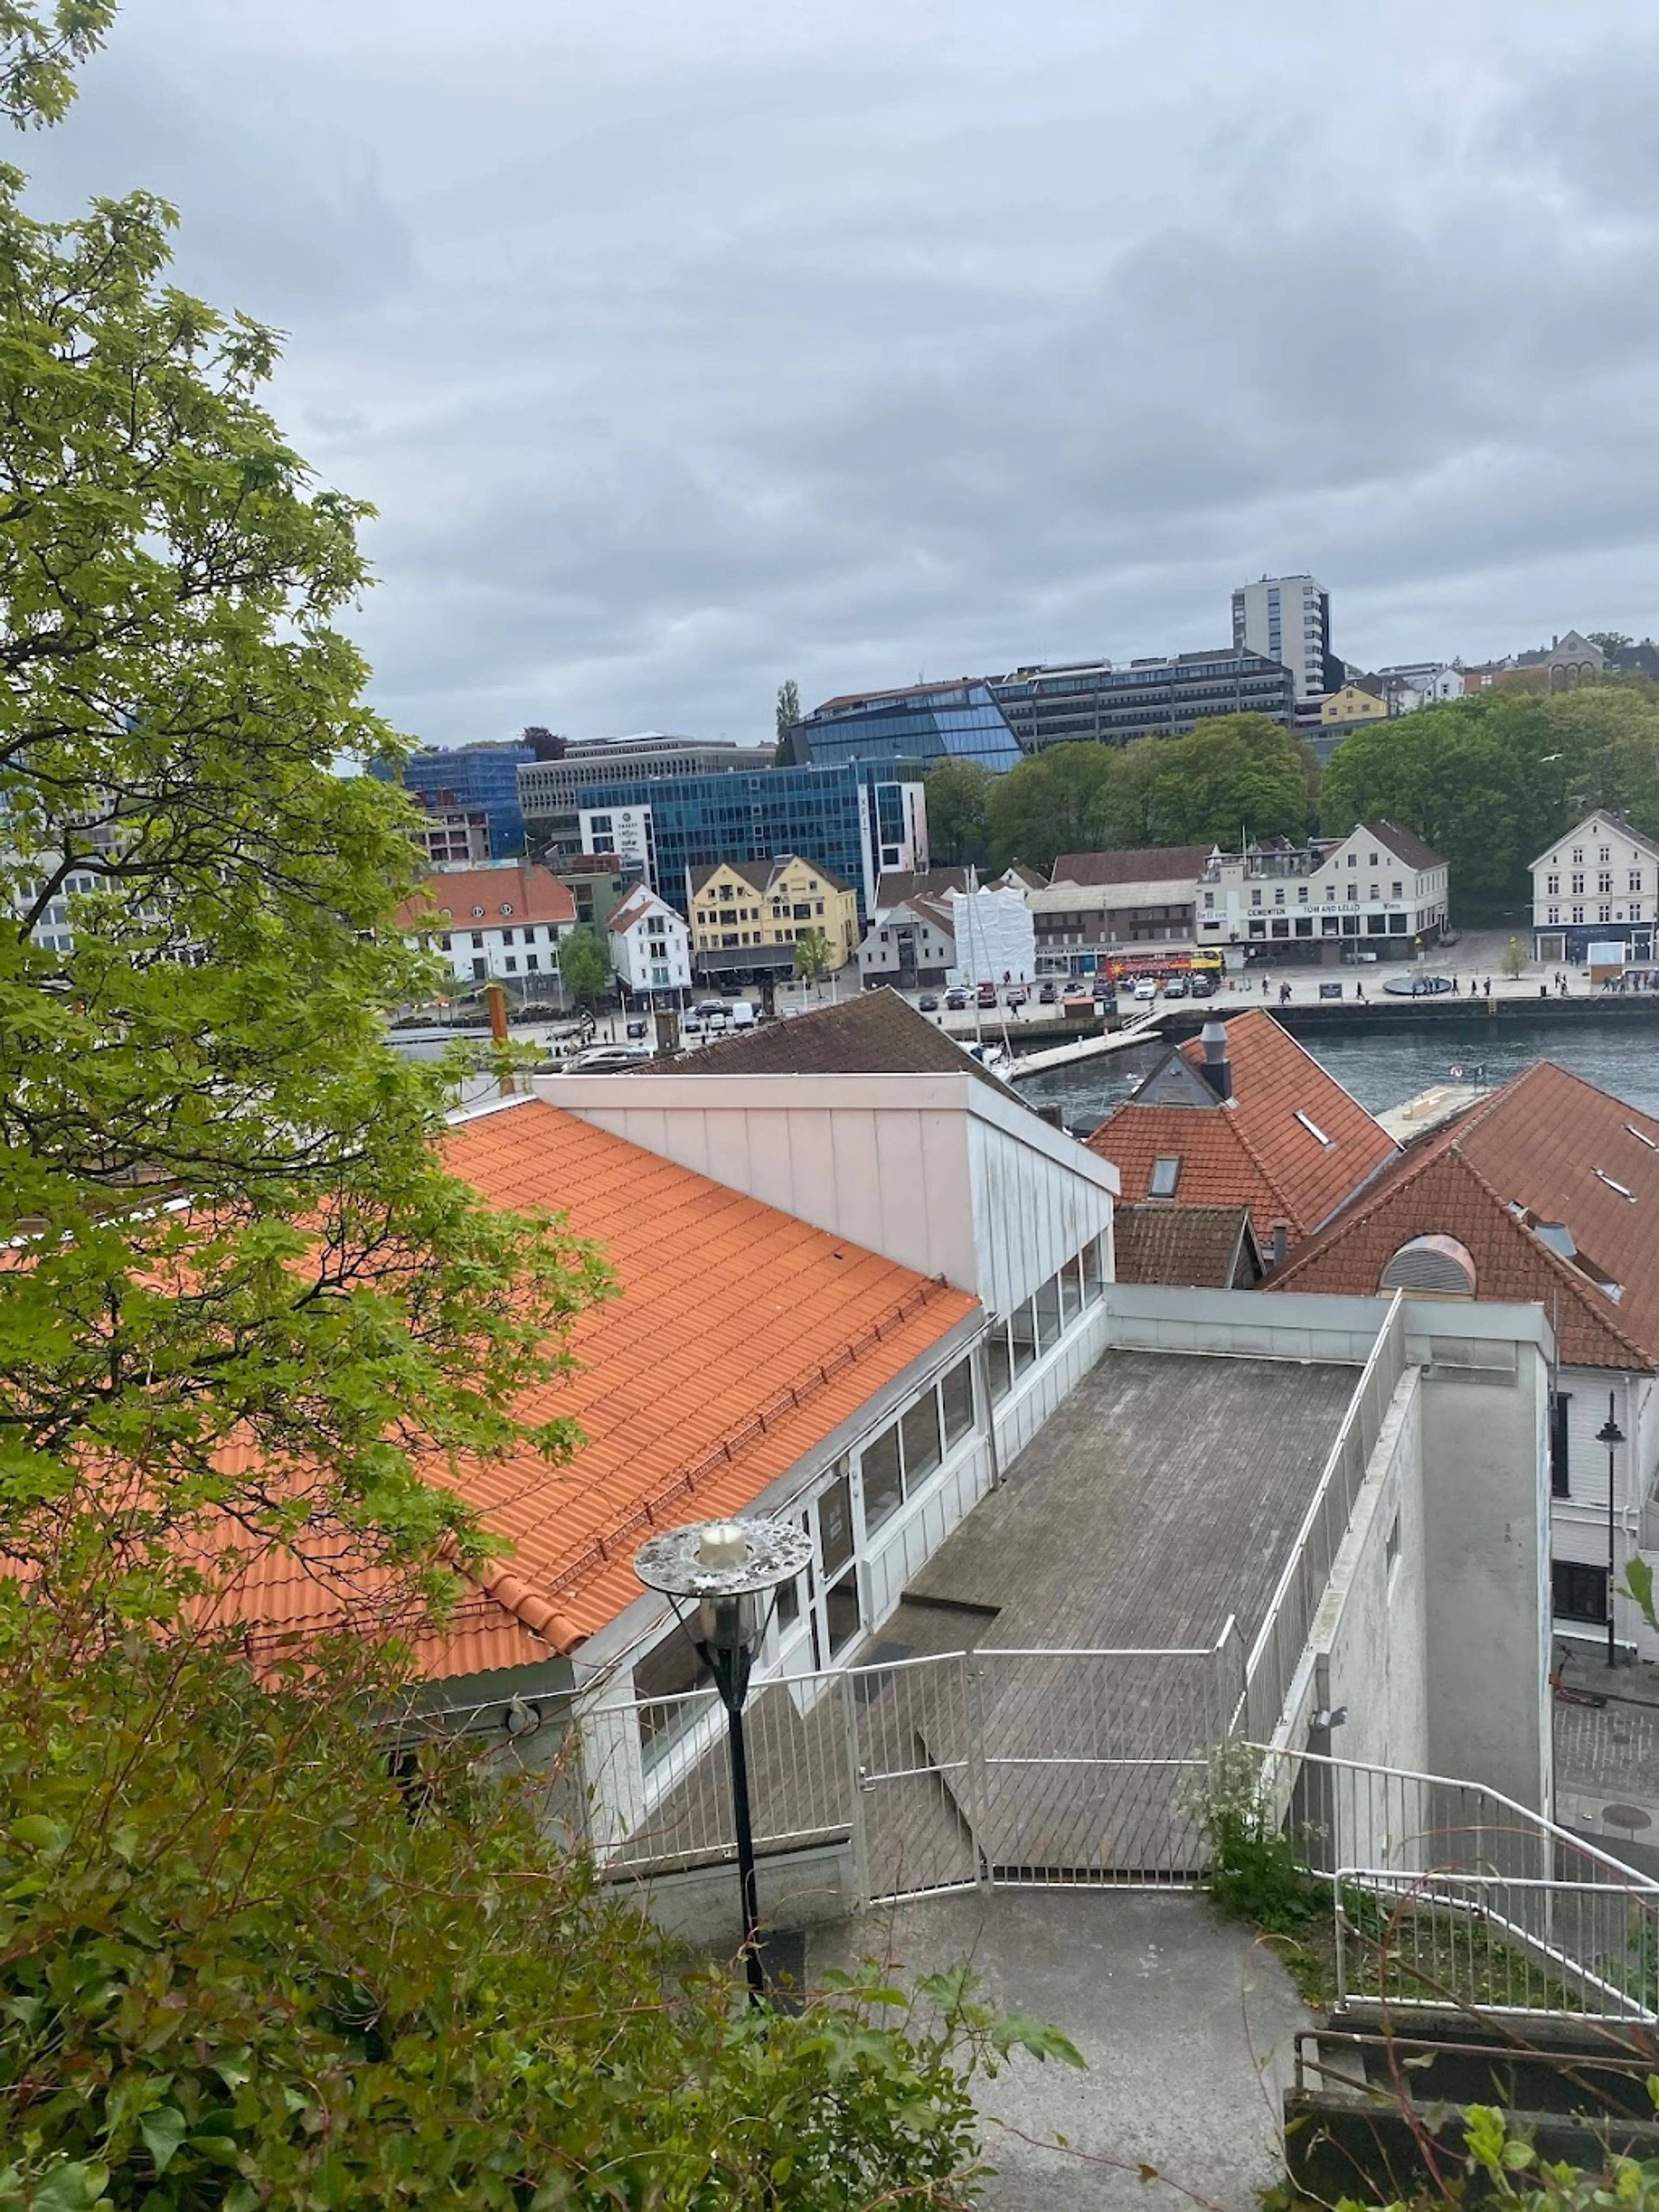 Stavanger City Center